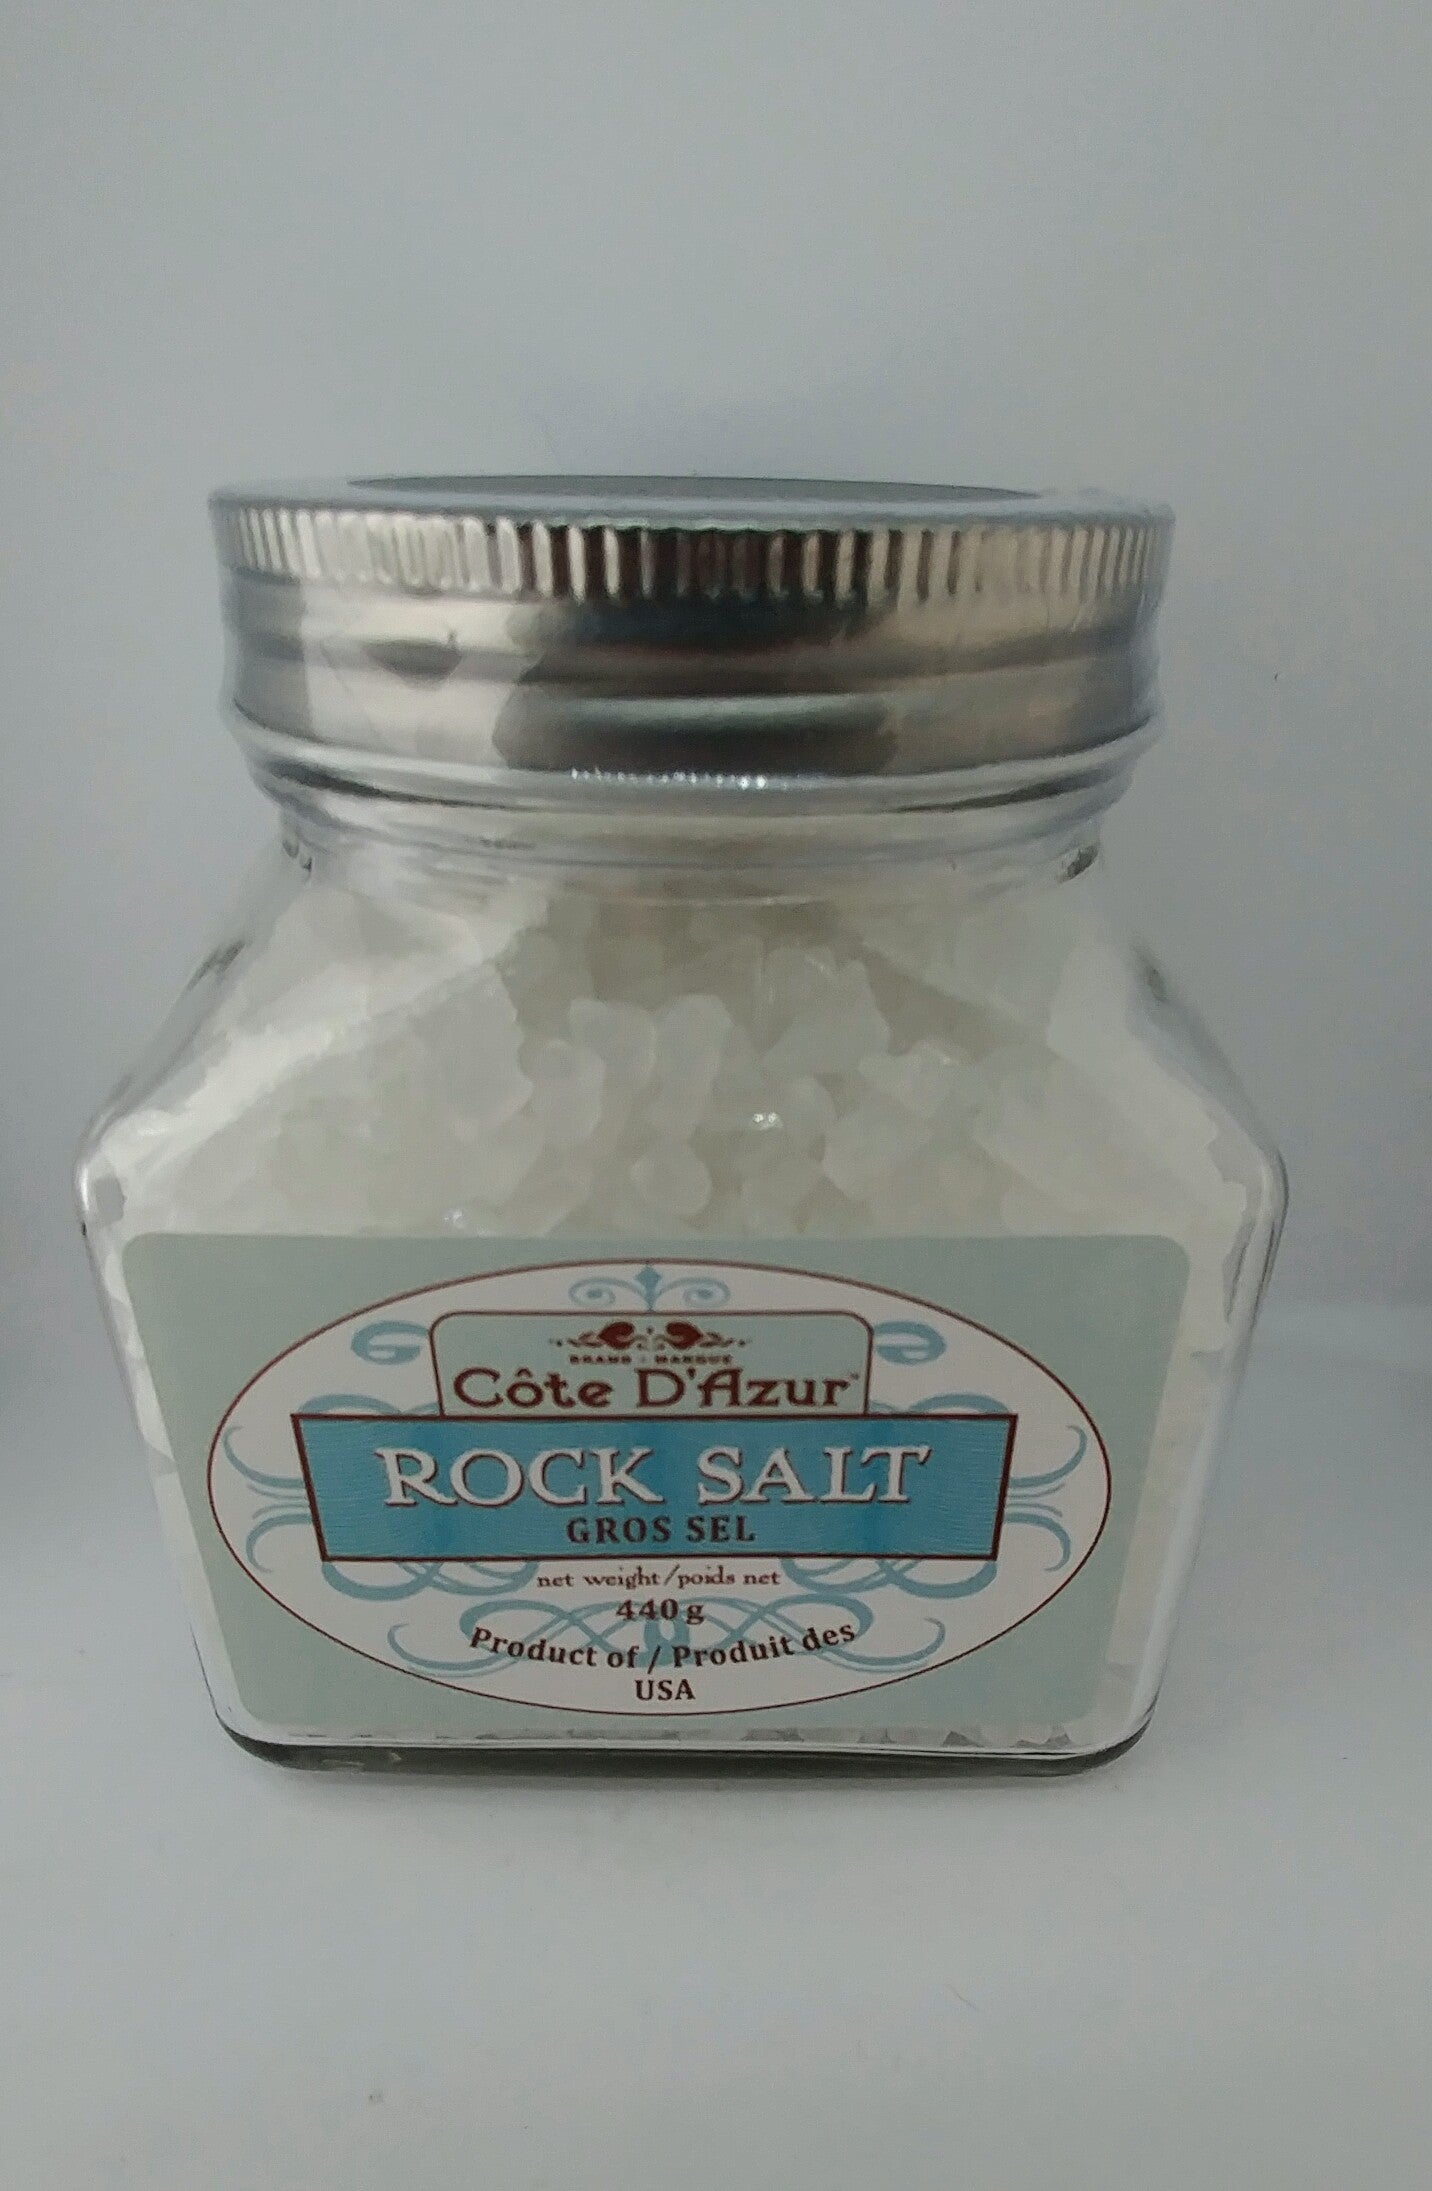 Cote D'Azur Rock Salt 440g